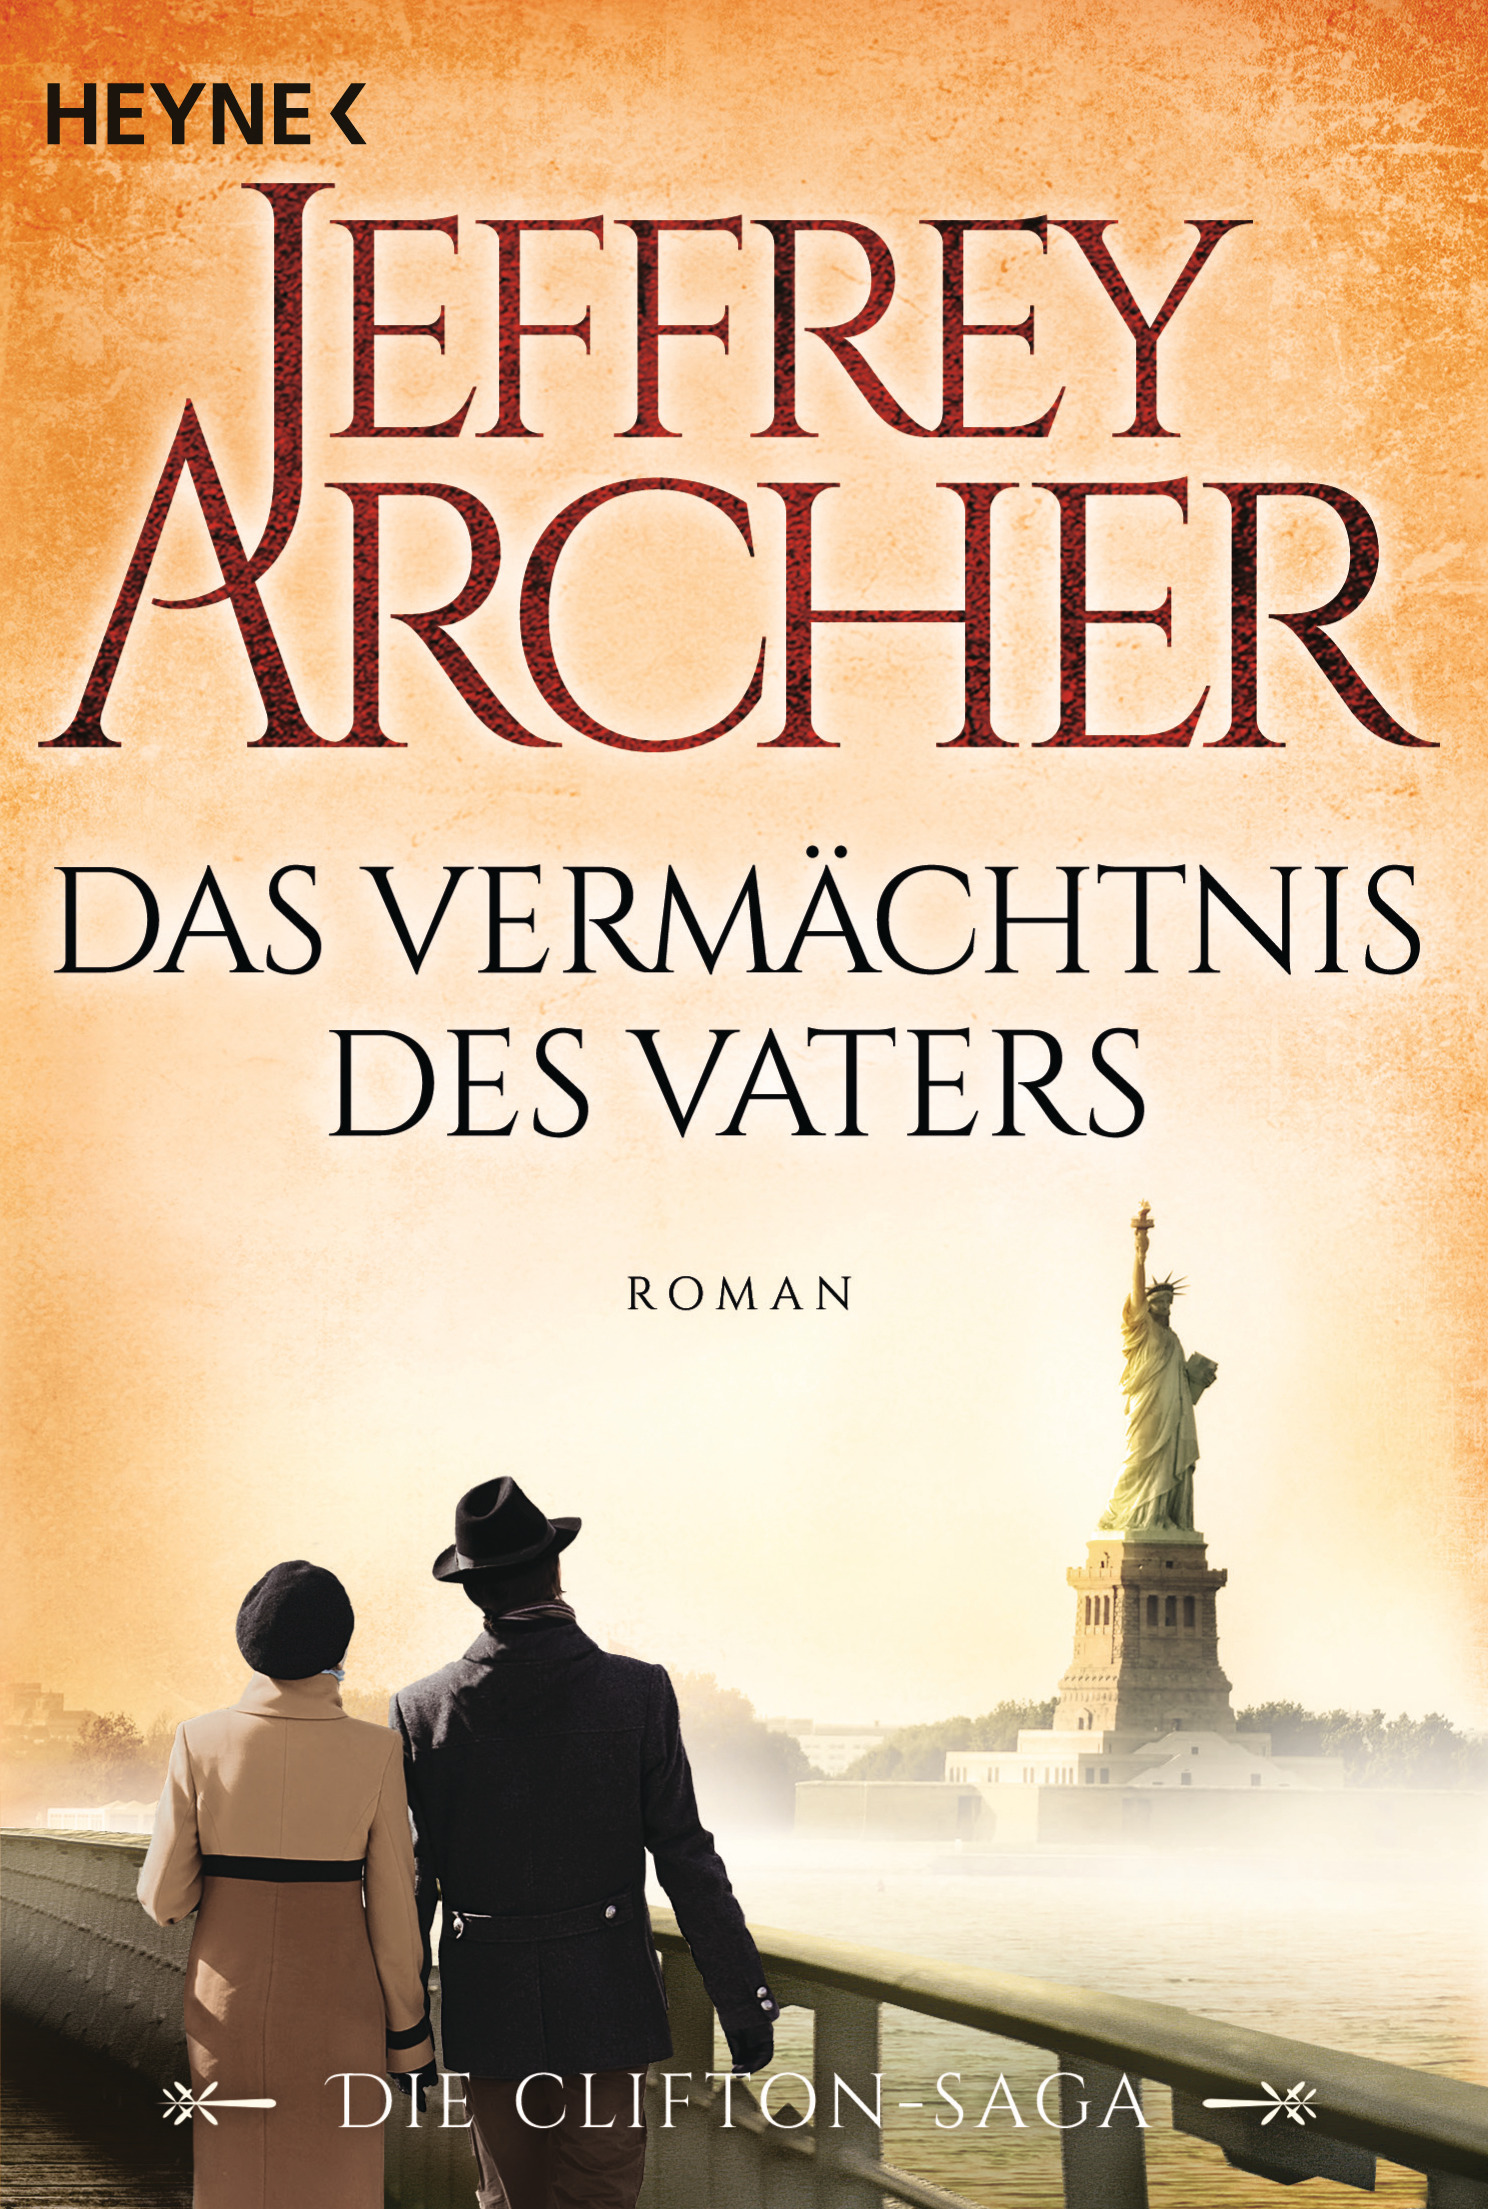 https://www.randomhouse.de/Taschenbuch/Das-Vermaechtnis-des-Vaters/Jeffrey-Archer/Heyne/e473706.rhd